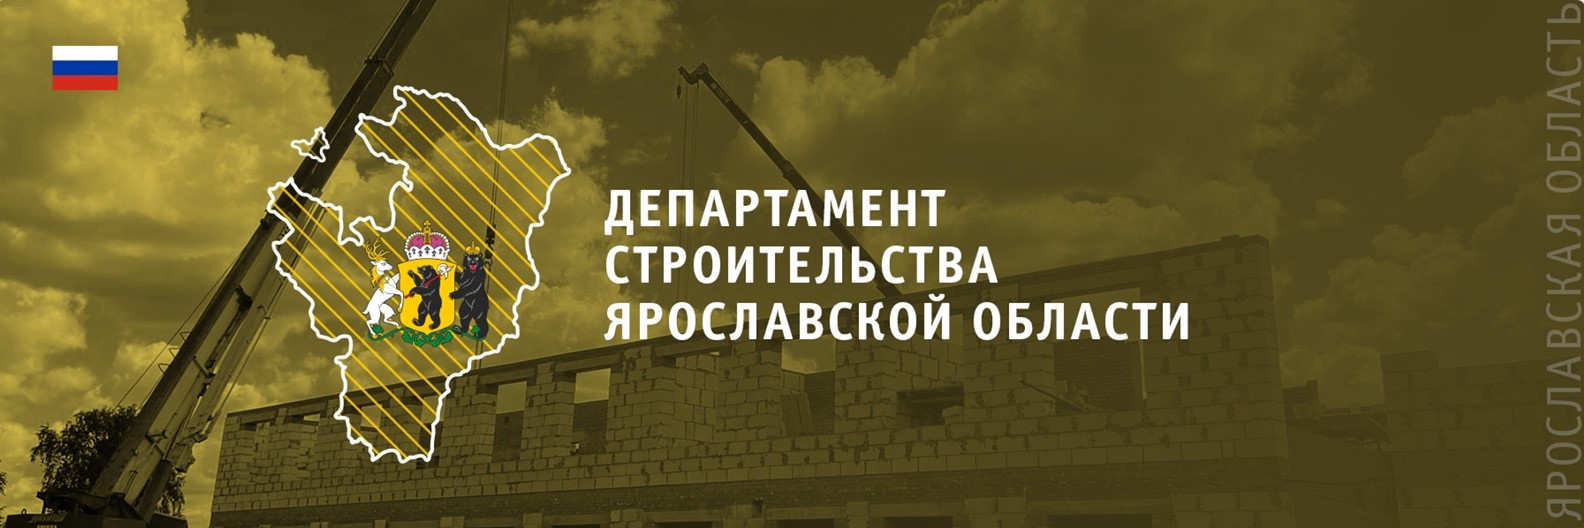 Департамент строительства ярославской области